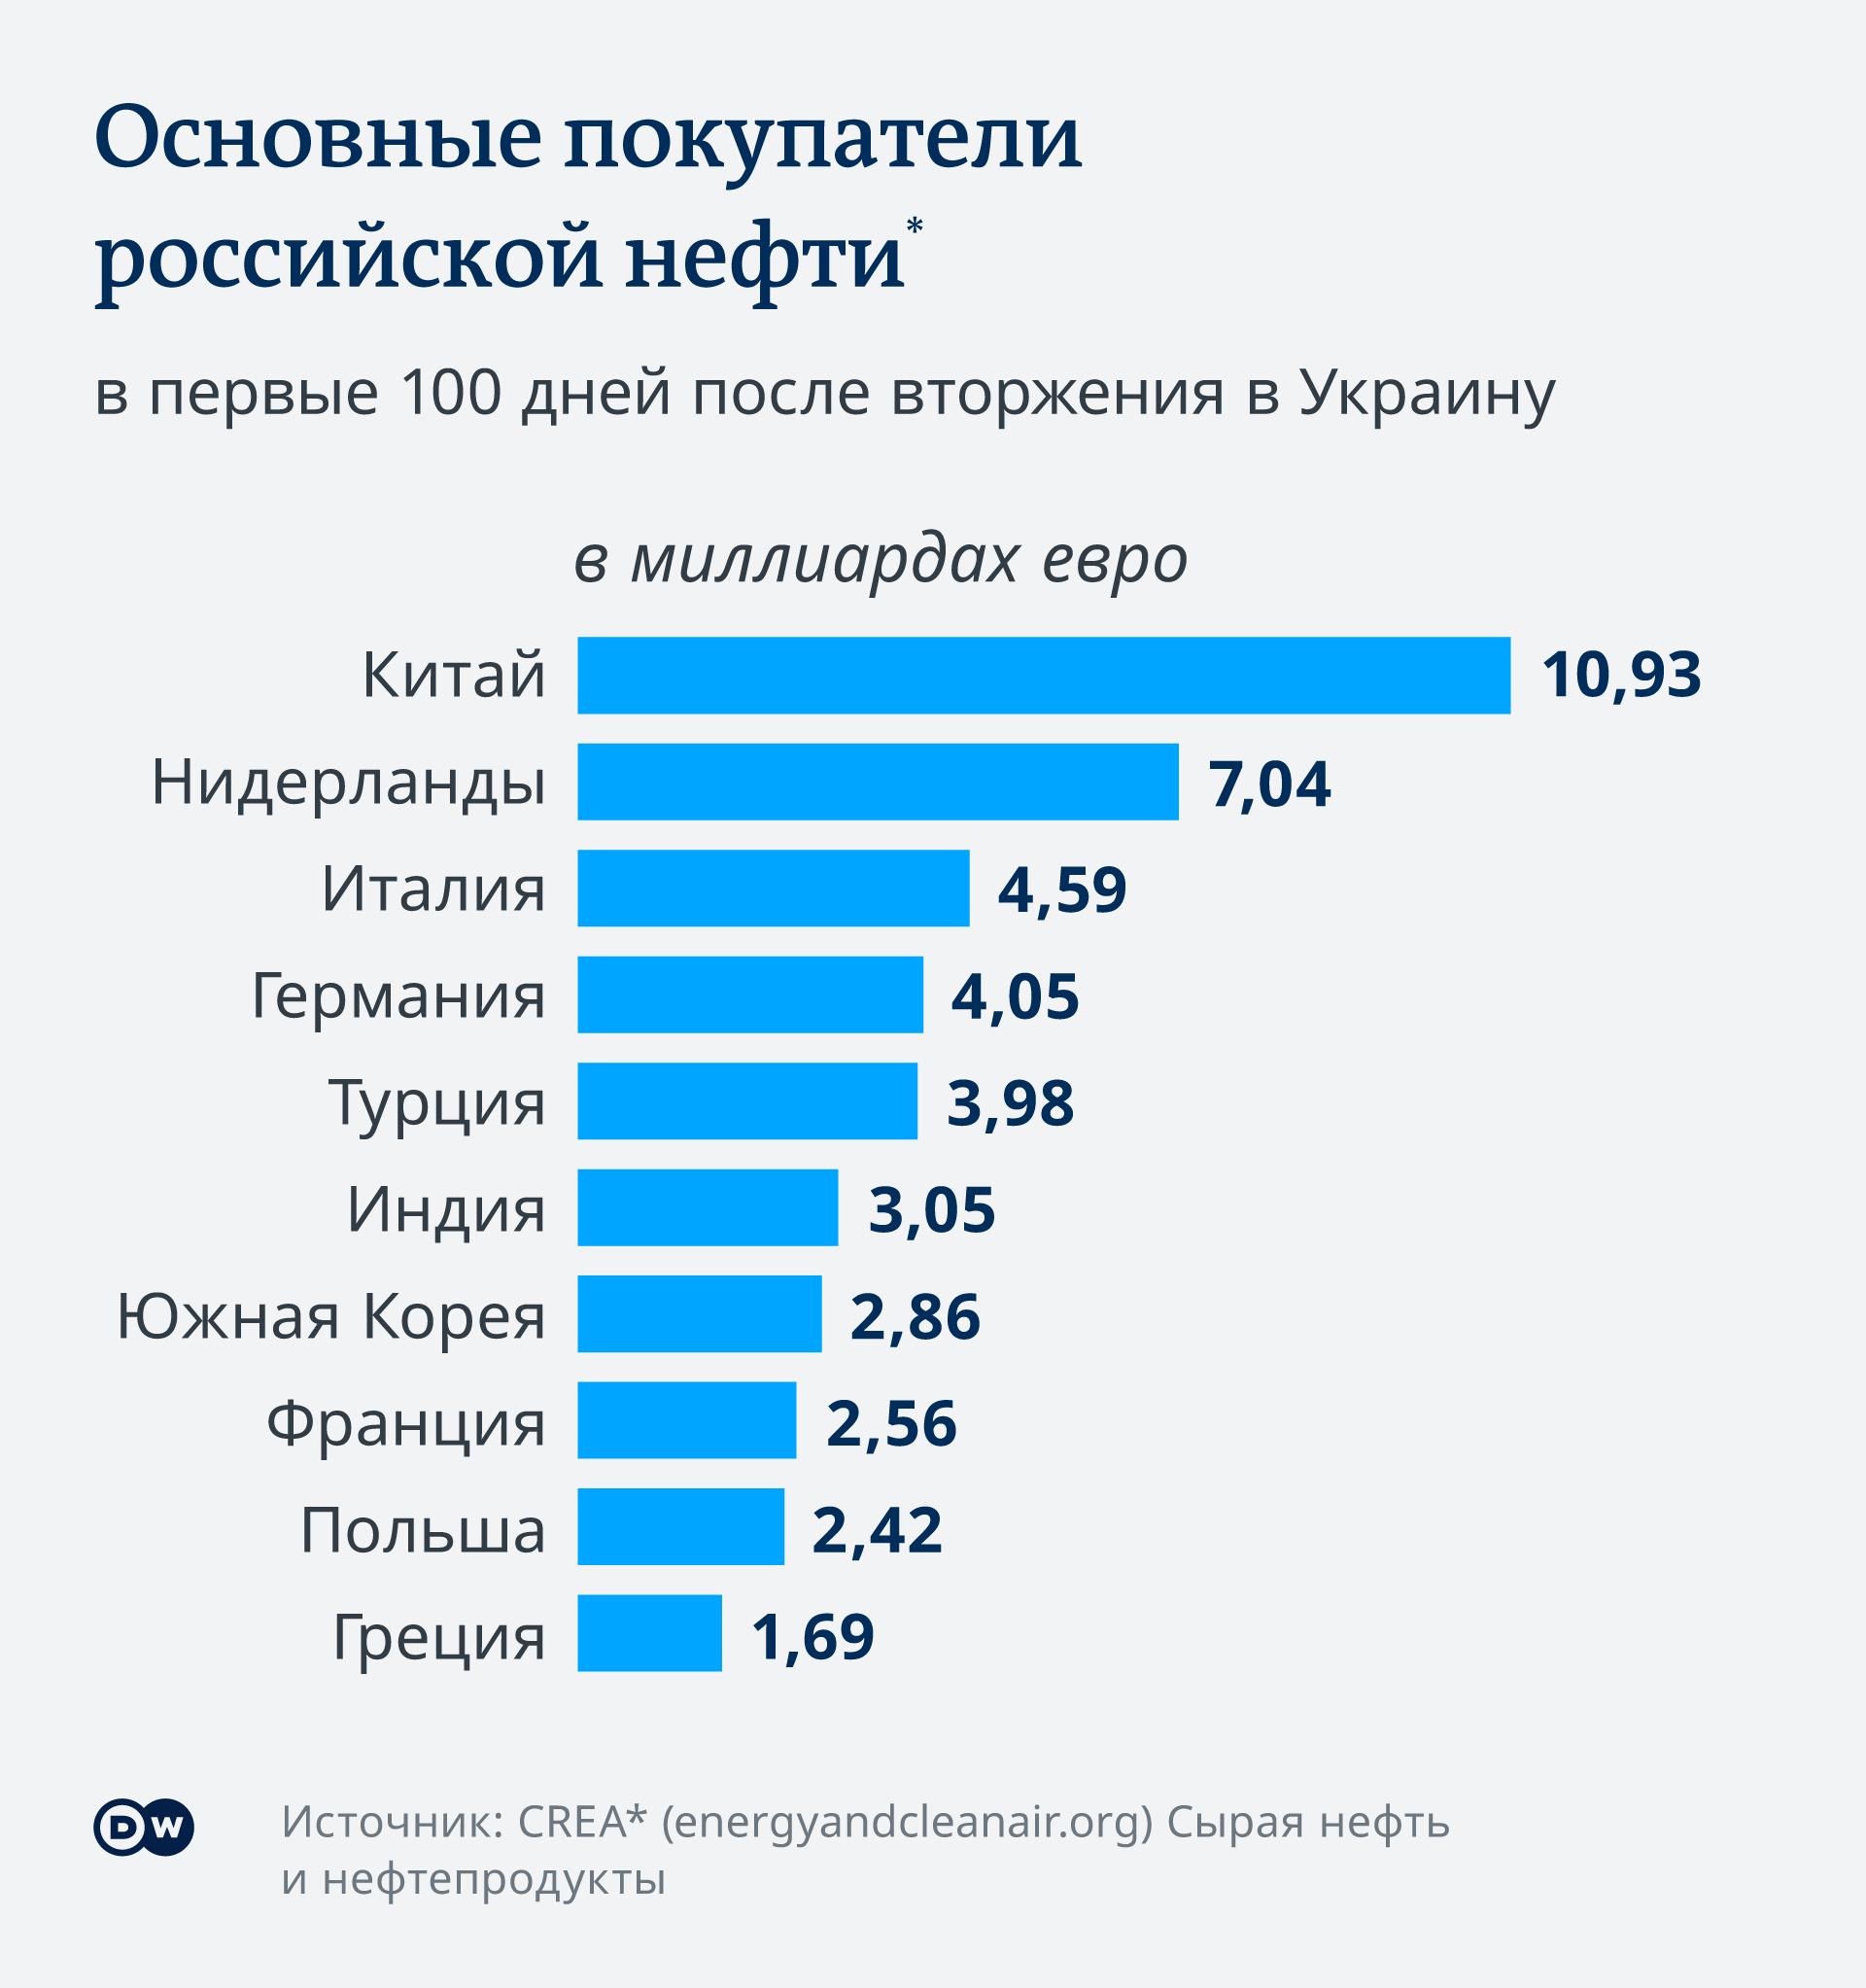 Инфографика Основные покупатели российской нефти